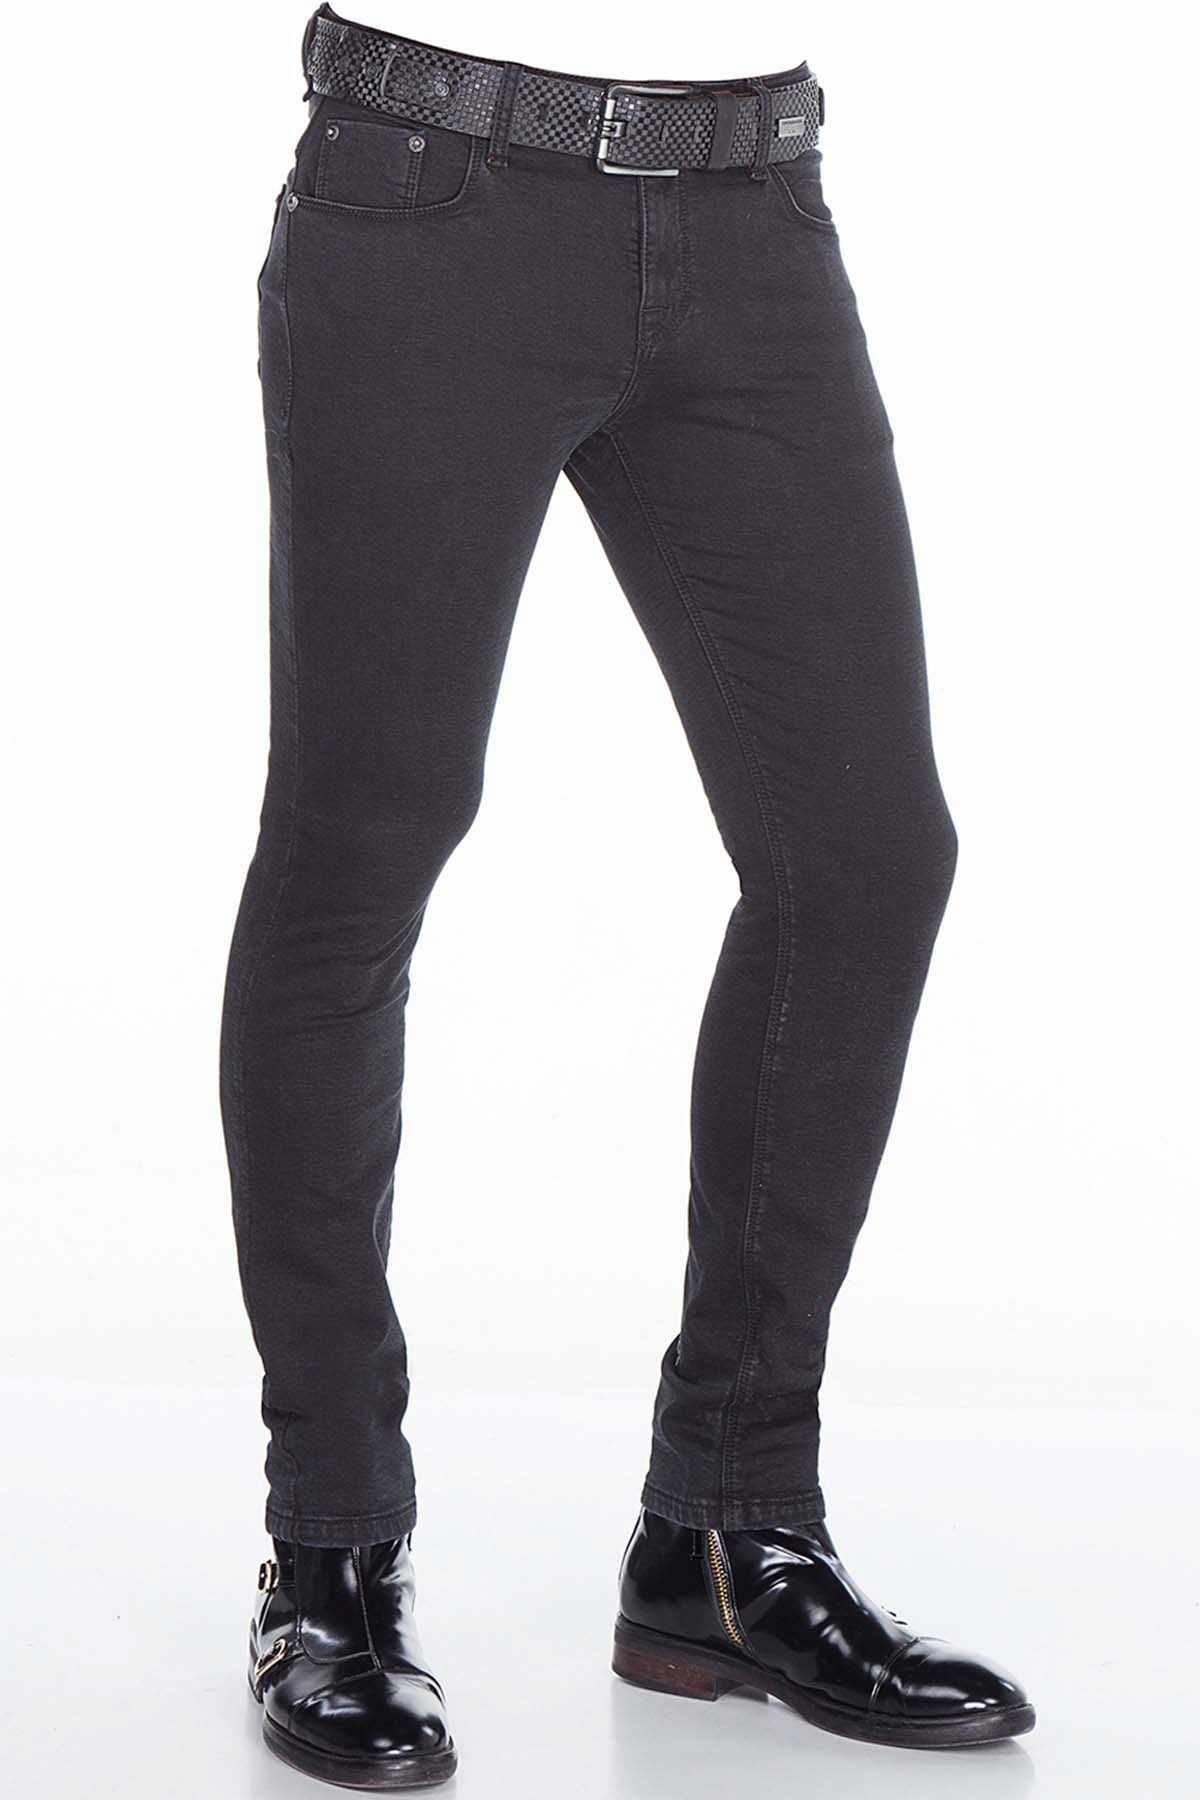 Jeans delgados de hombres CD403 en el clásico diseño de 5 bolsillos